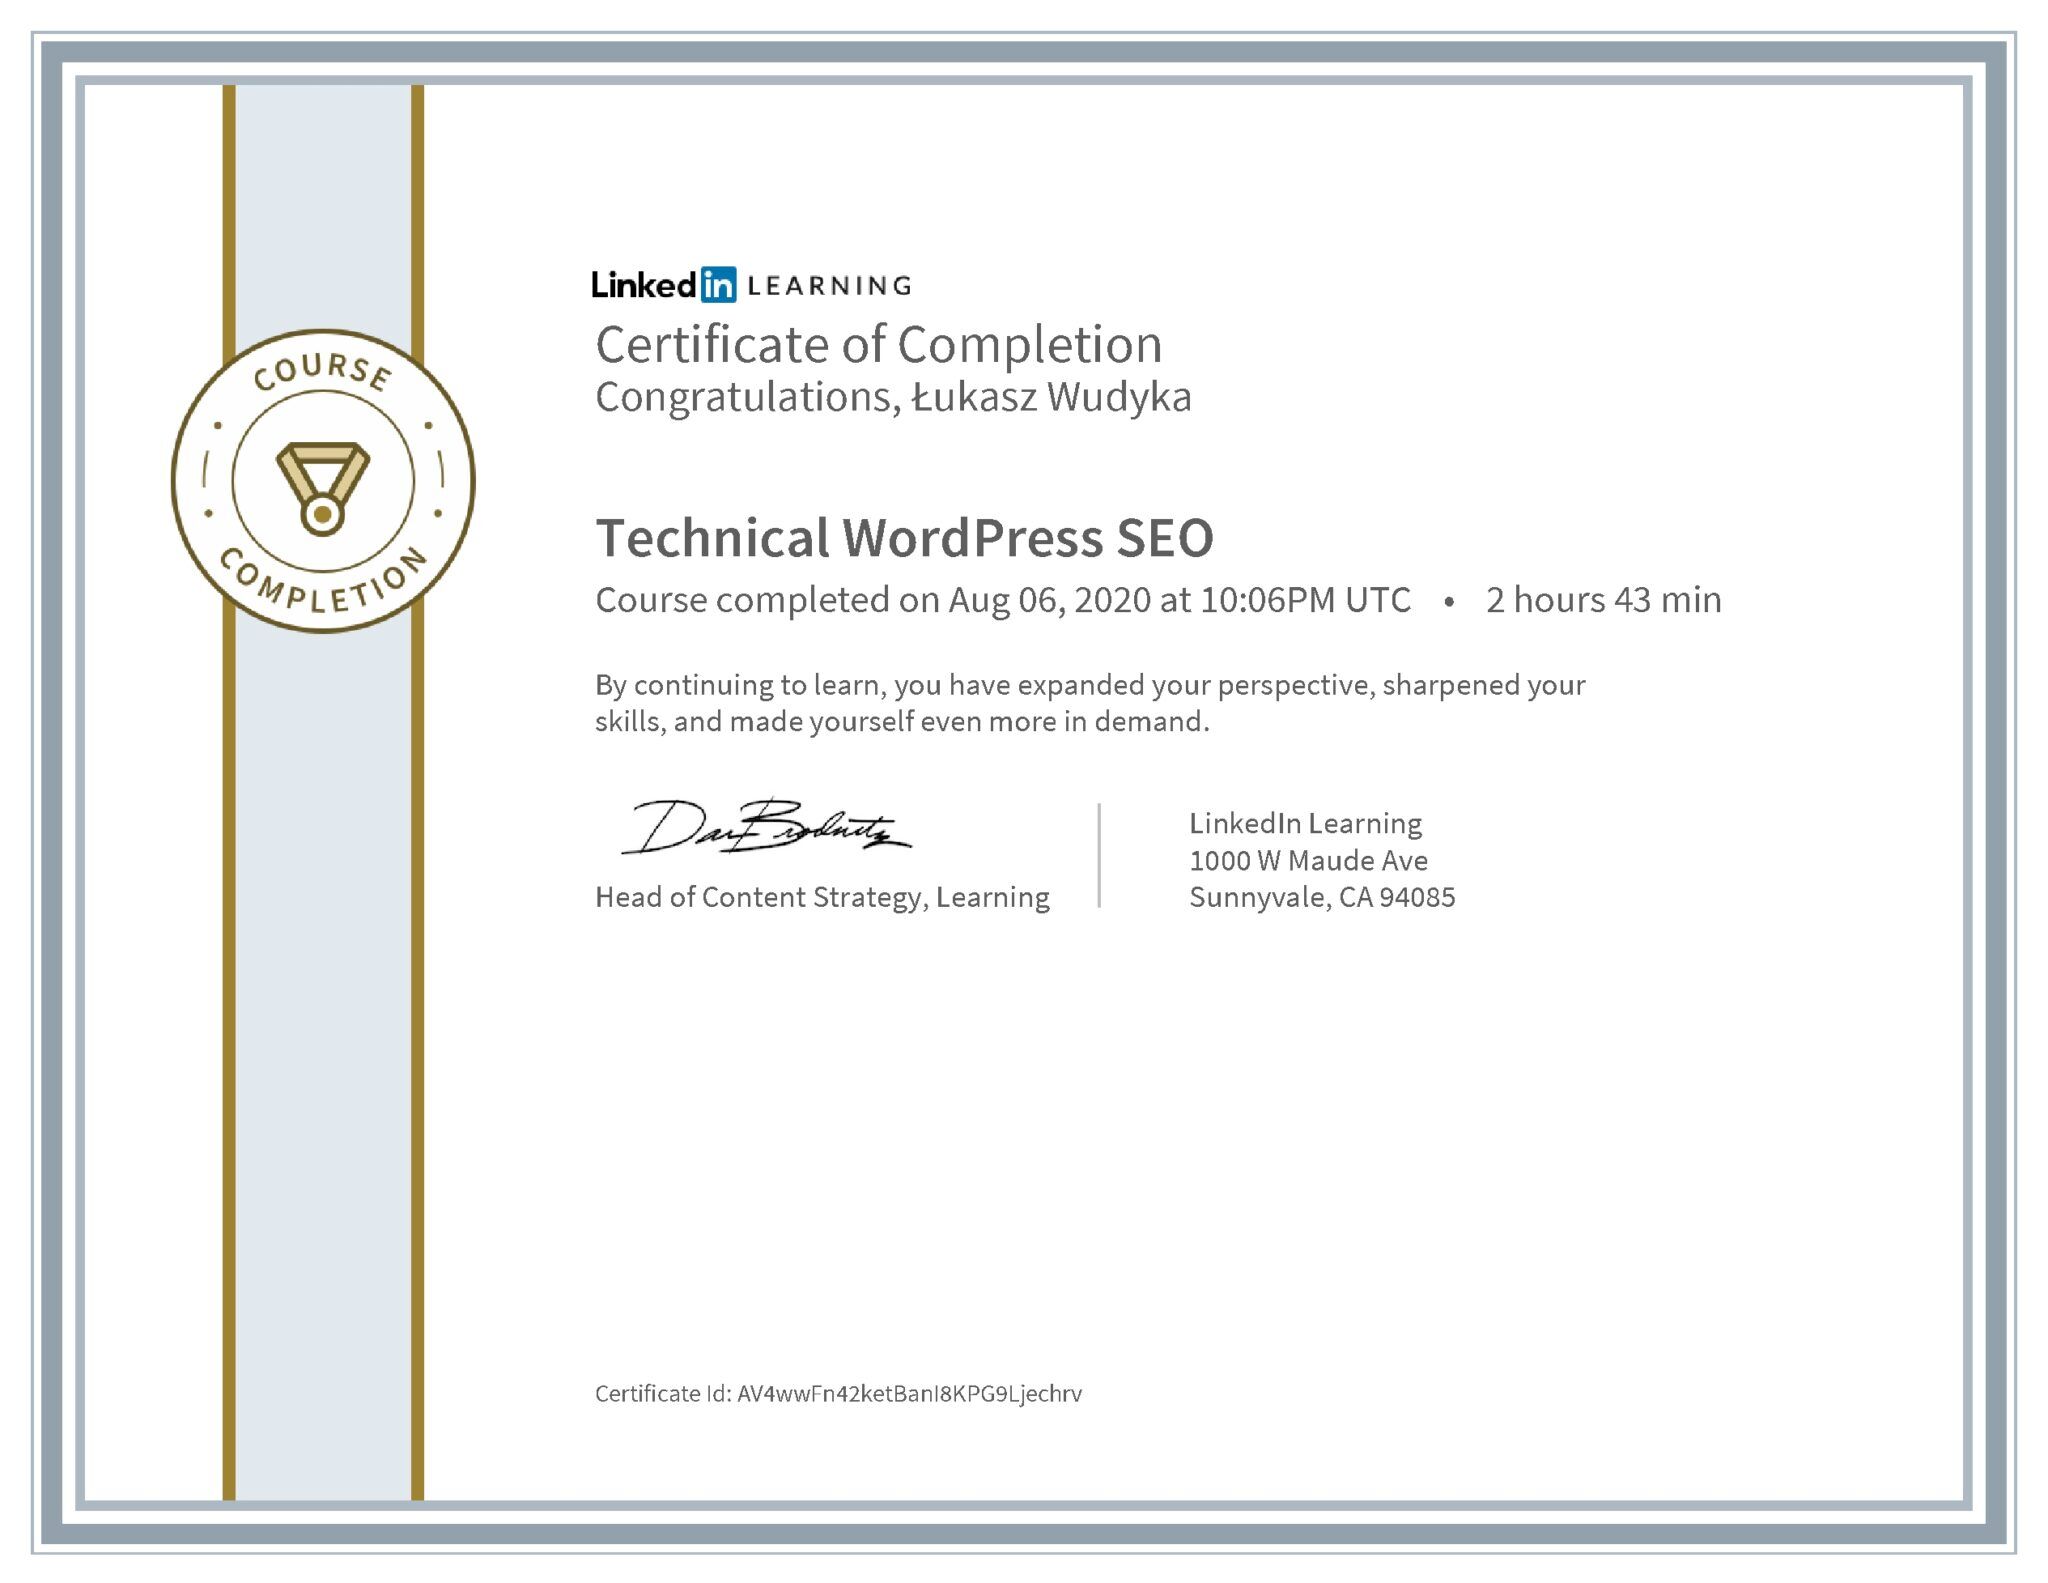 Łukasz Wudyka certyfikat LinkedIn Technical WordPress SEO